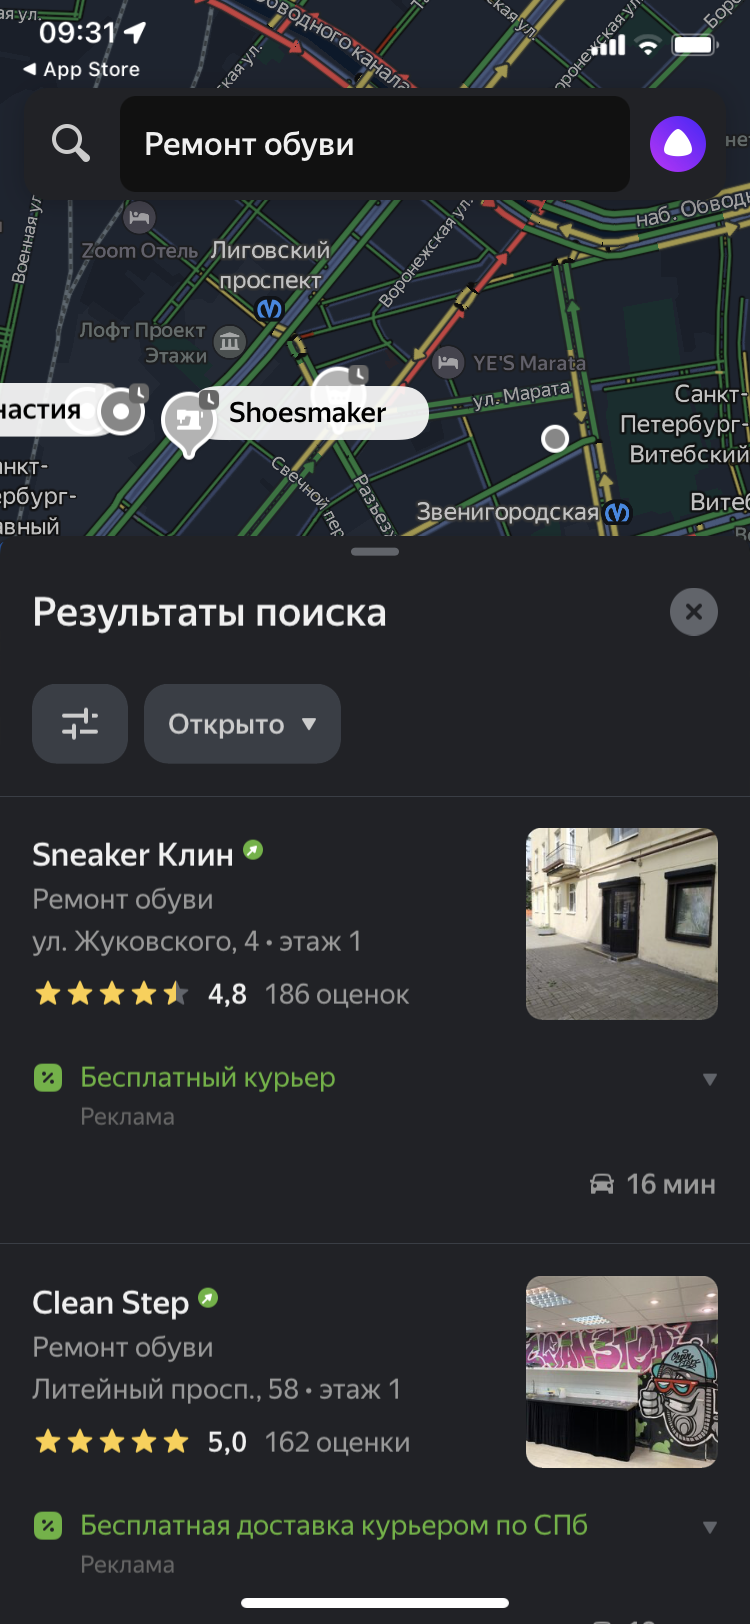 Объявления в мобильном приложении Яндекс Навигатор